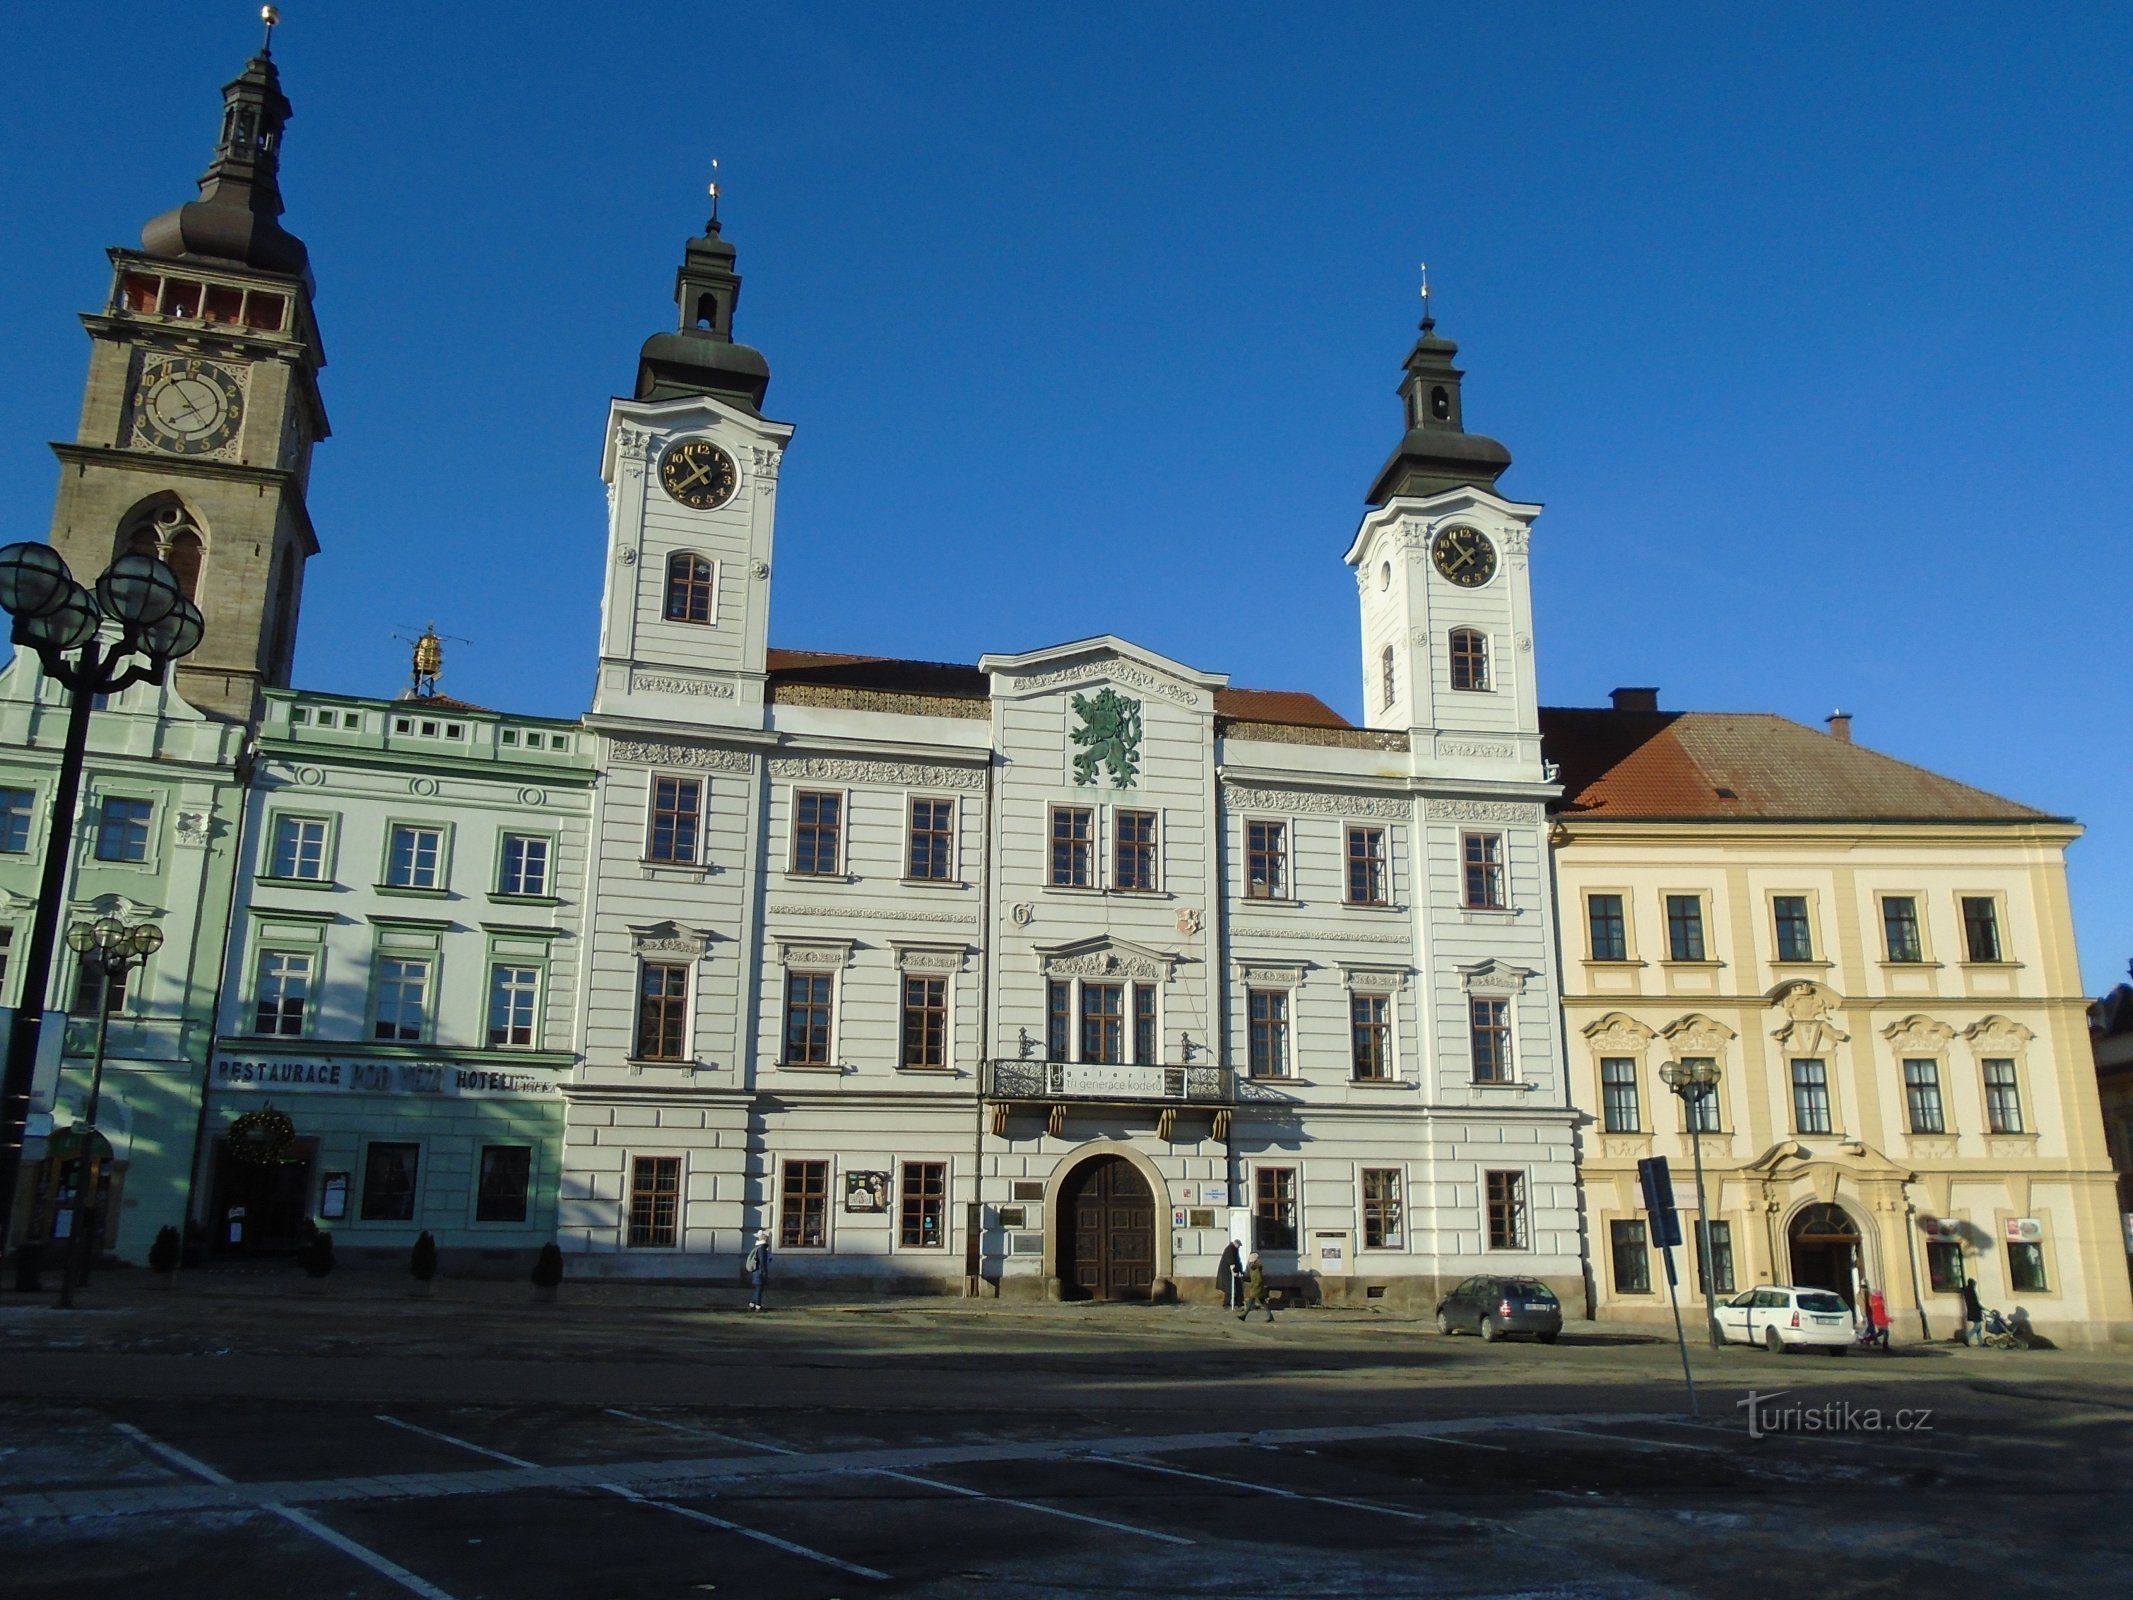 Velké náměstí No. 1 (Hradec Králové, 10.12.2017 October XNUMX)